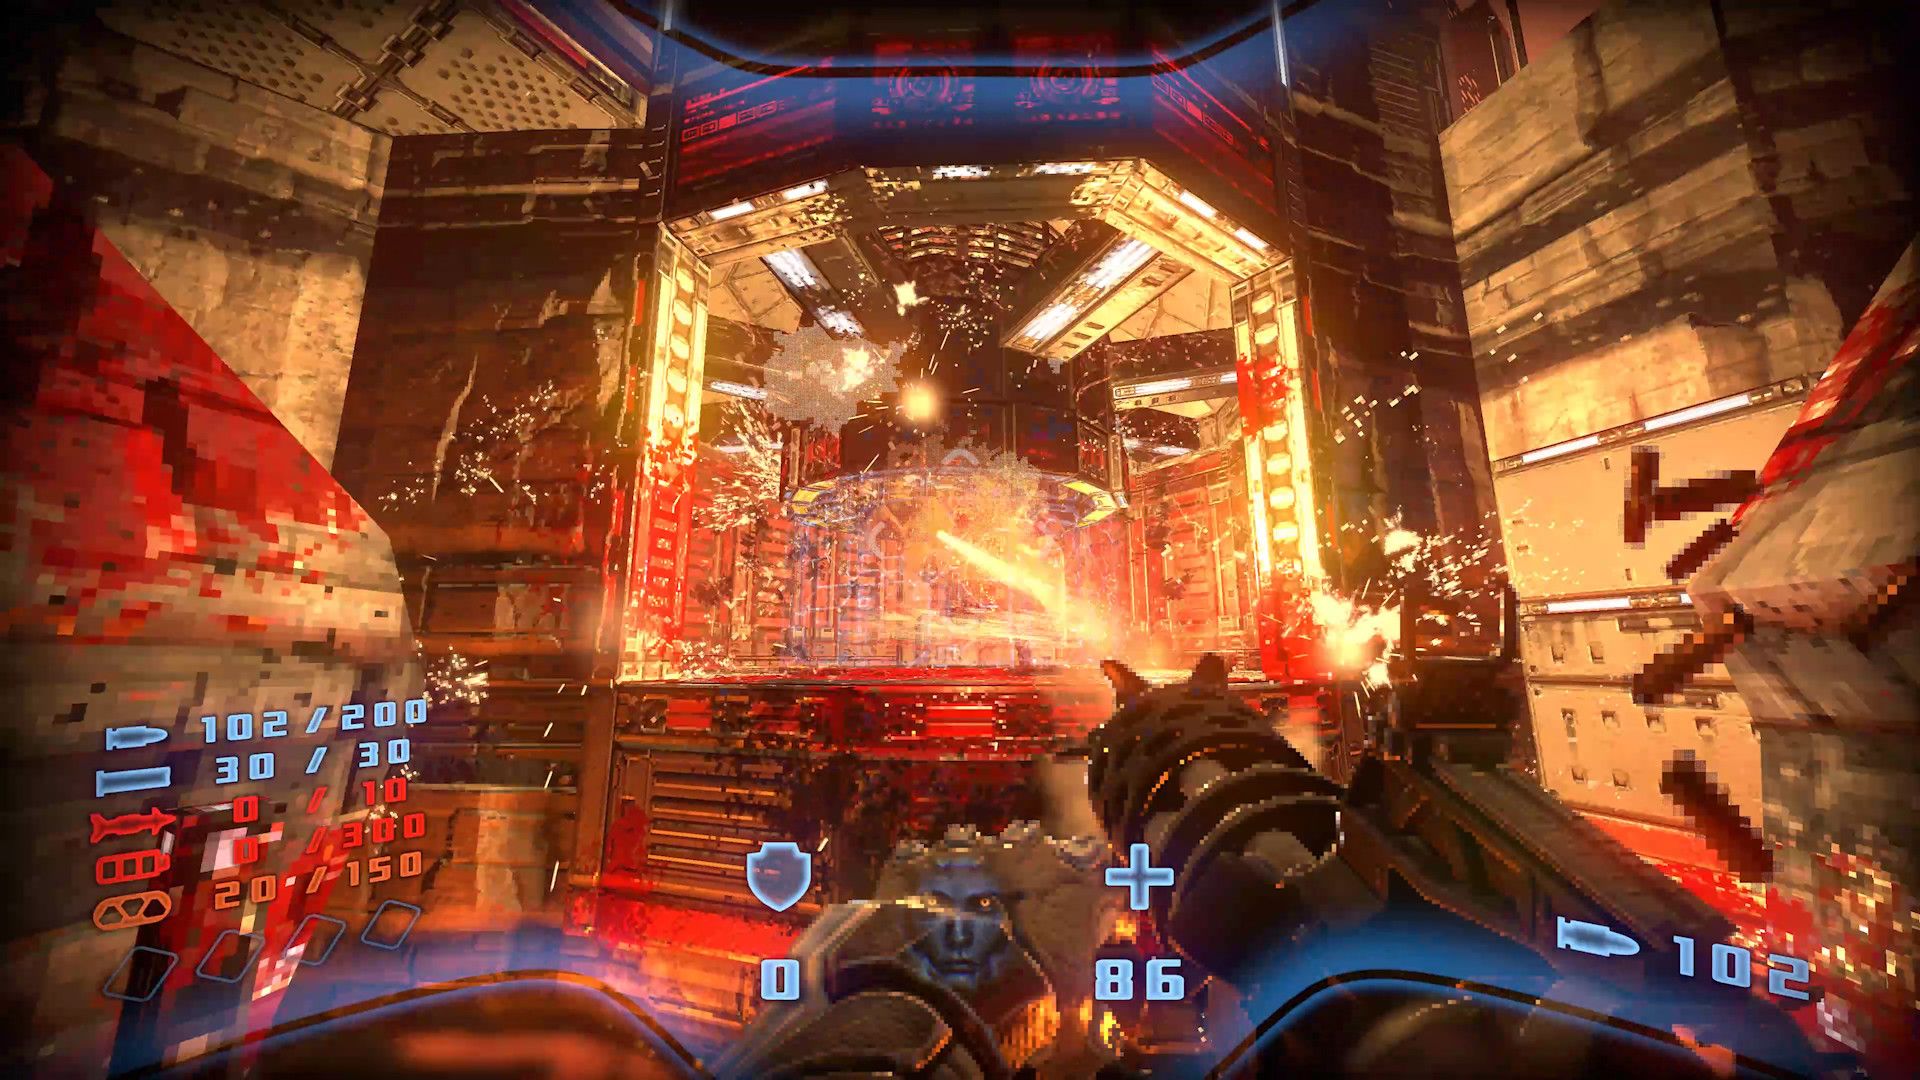 The player firing a minigun at a demonic core